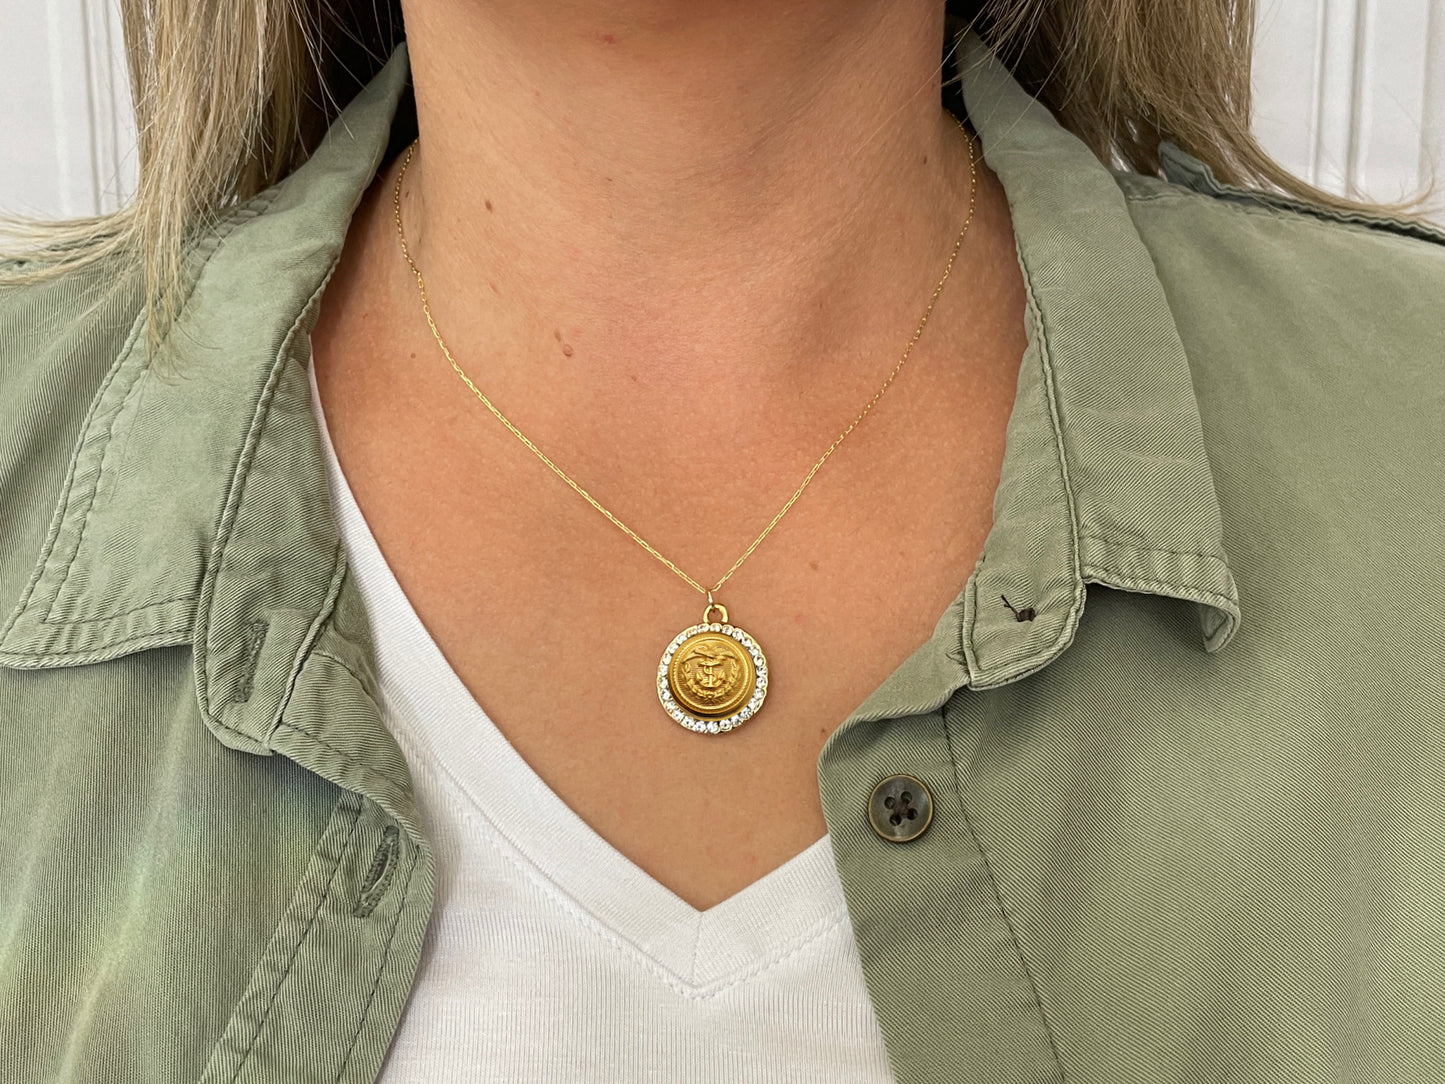 Coast Guard Button Necklace - Small Rhinestone Gold Pendant